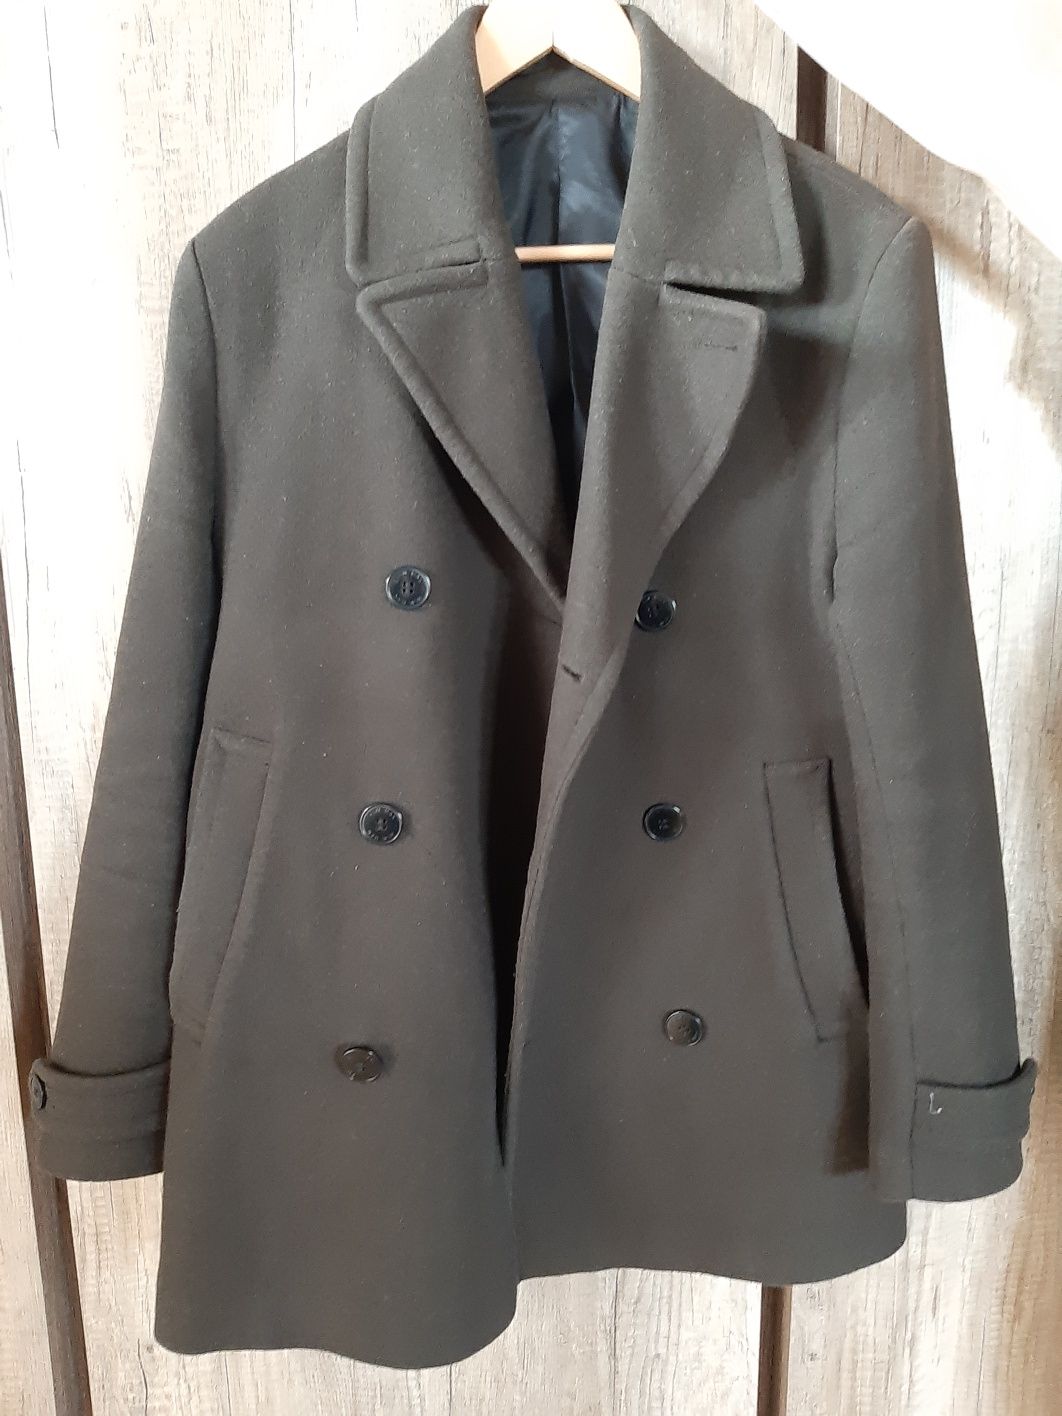 Ciemnobrązowy  płaszcz męski/bosmanka  marki H&M rozmiar 46